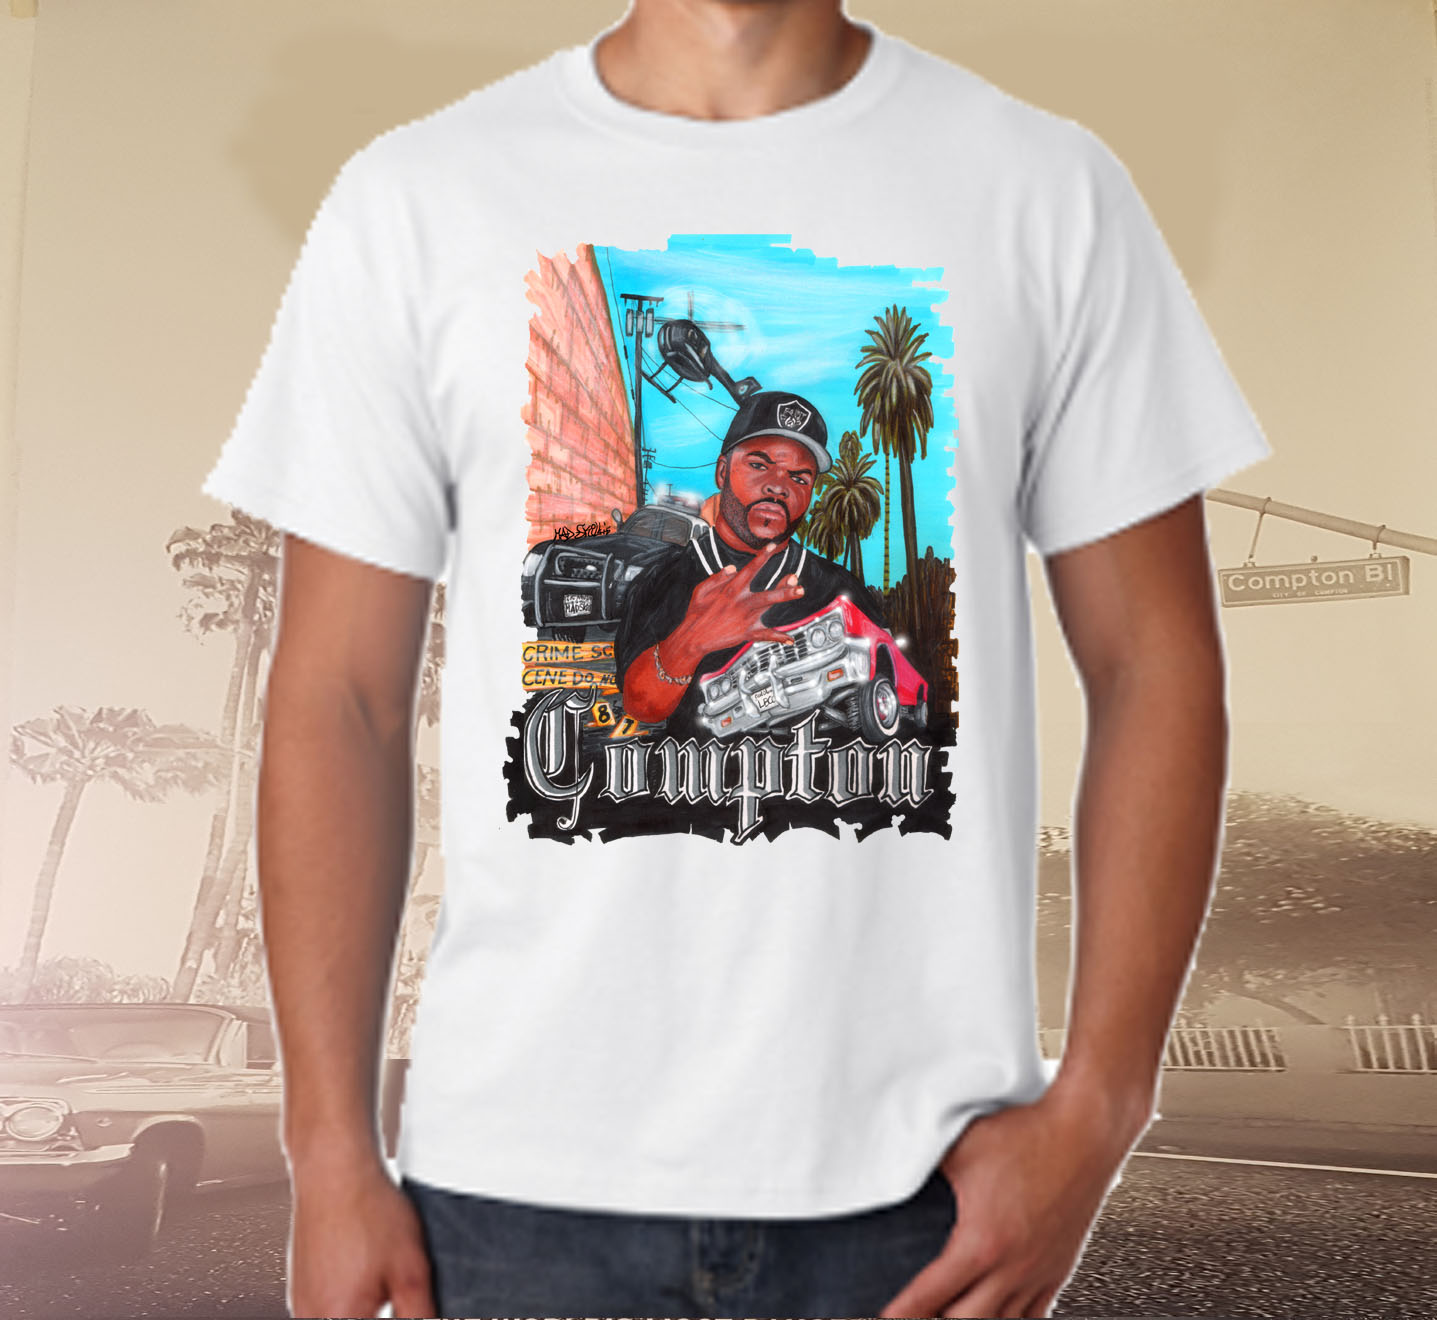 Link to my Etsy Shop Hip Hop Stars.Shirts können auch direkt bei mir über FB Messsenger oder Insta bestellt werden!!!